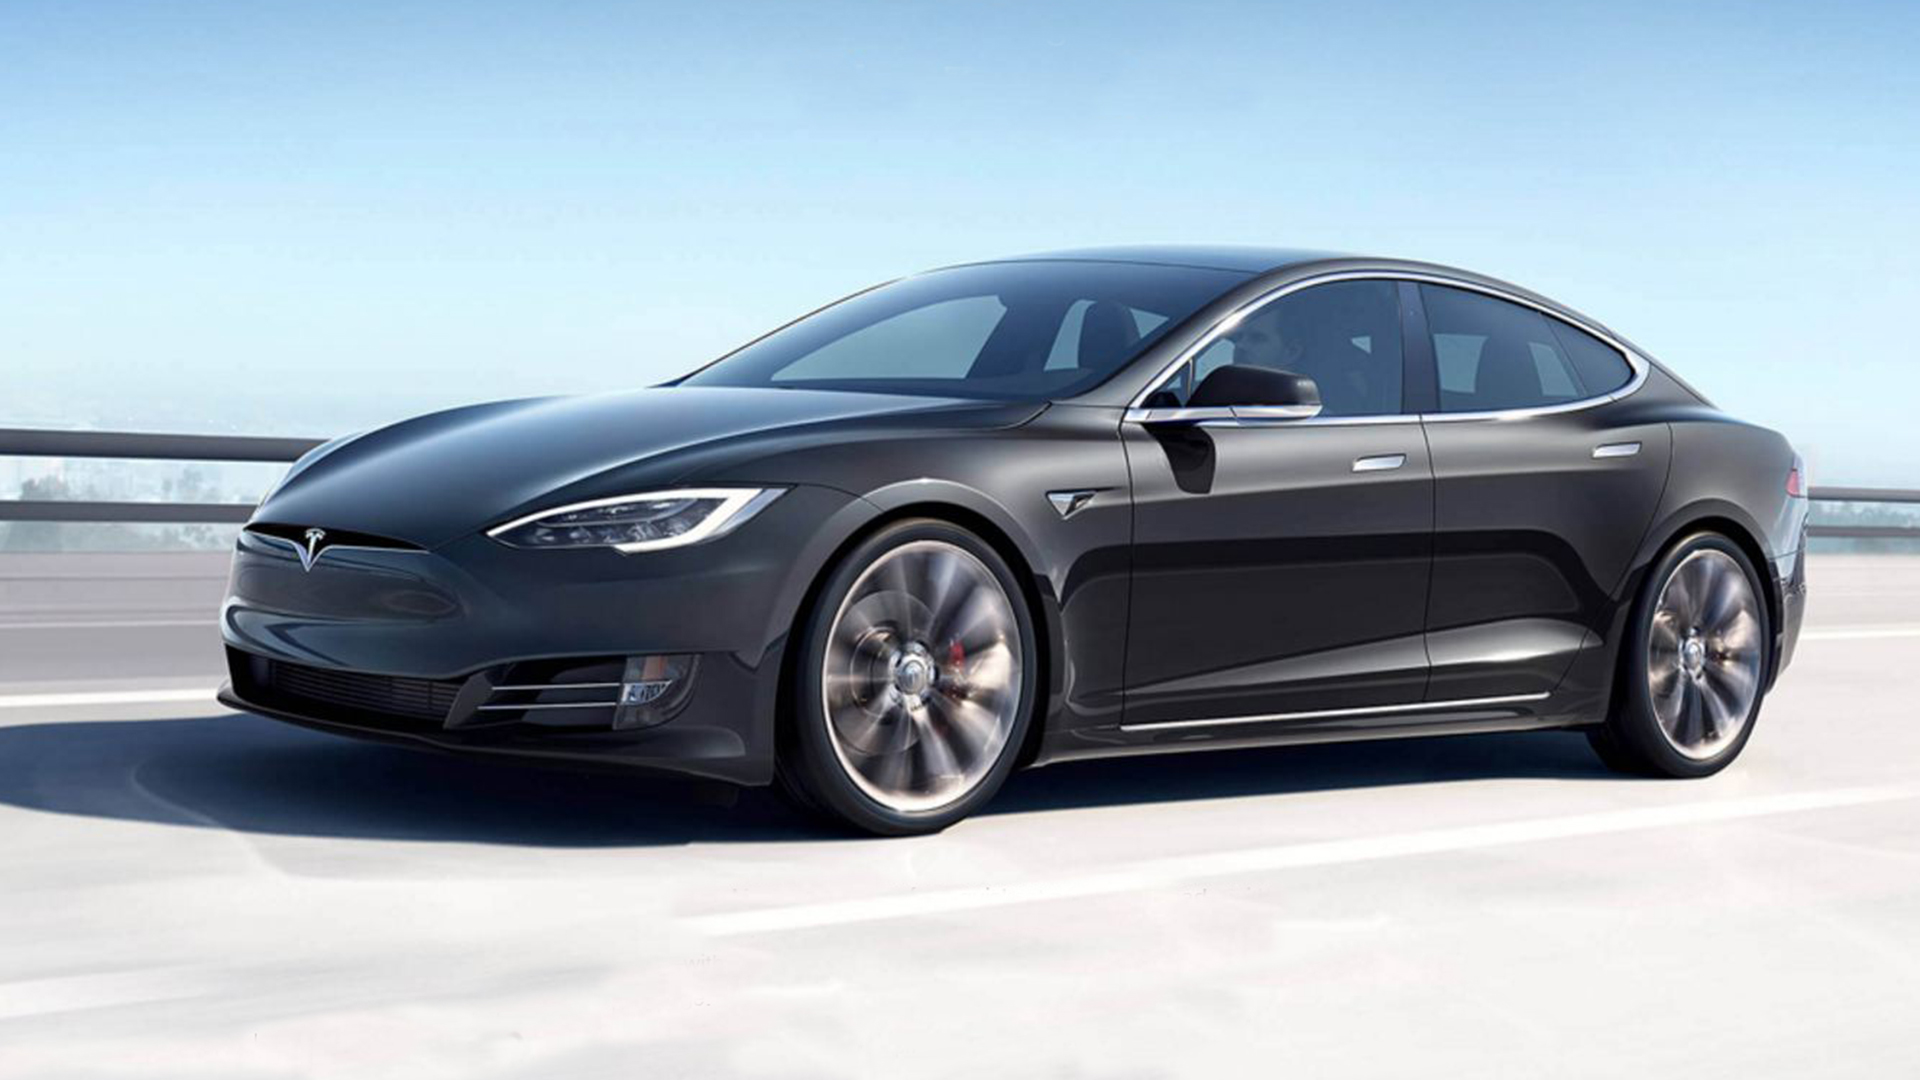 Tesla Model S P100d Exterior Car Photos Overdrive